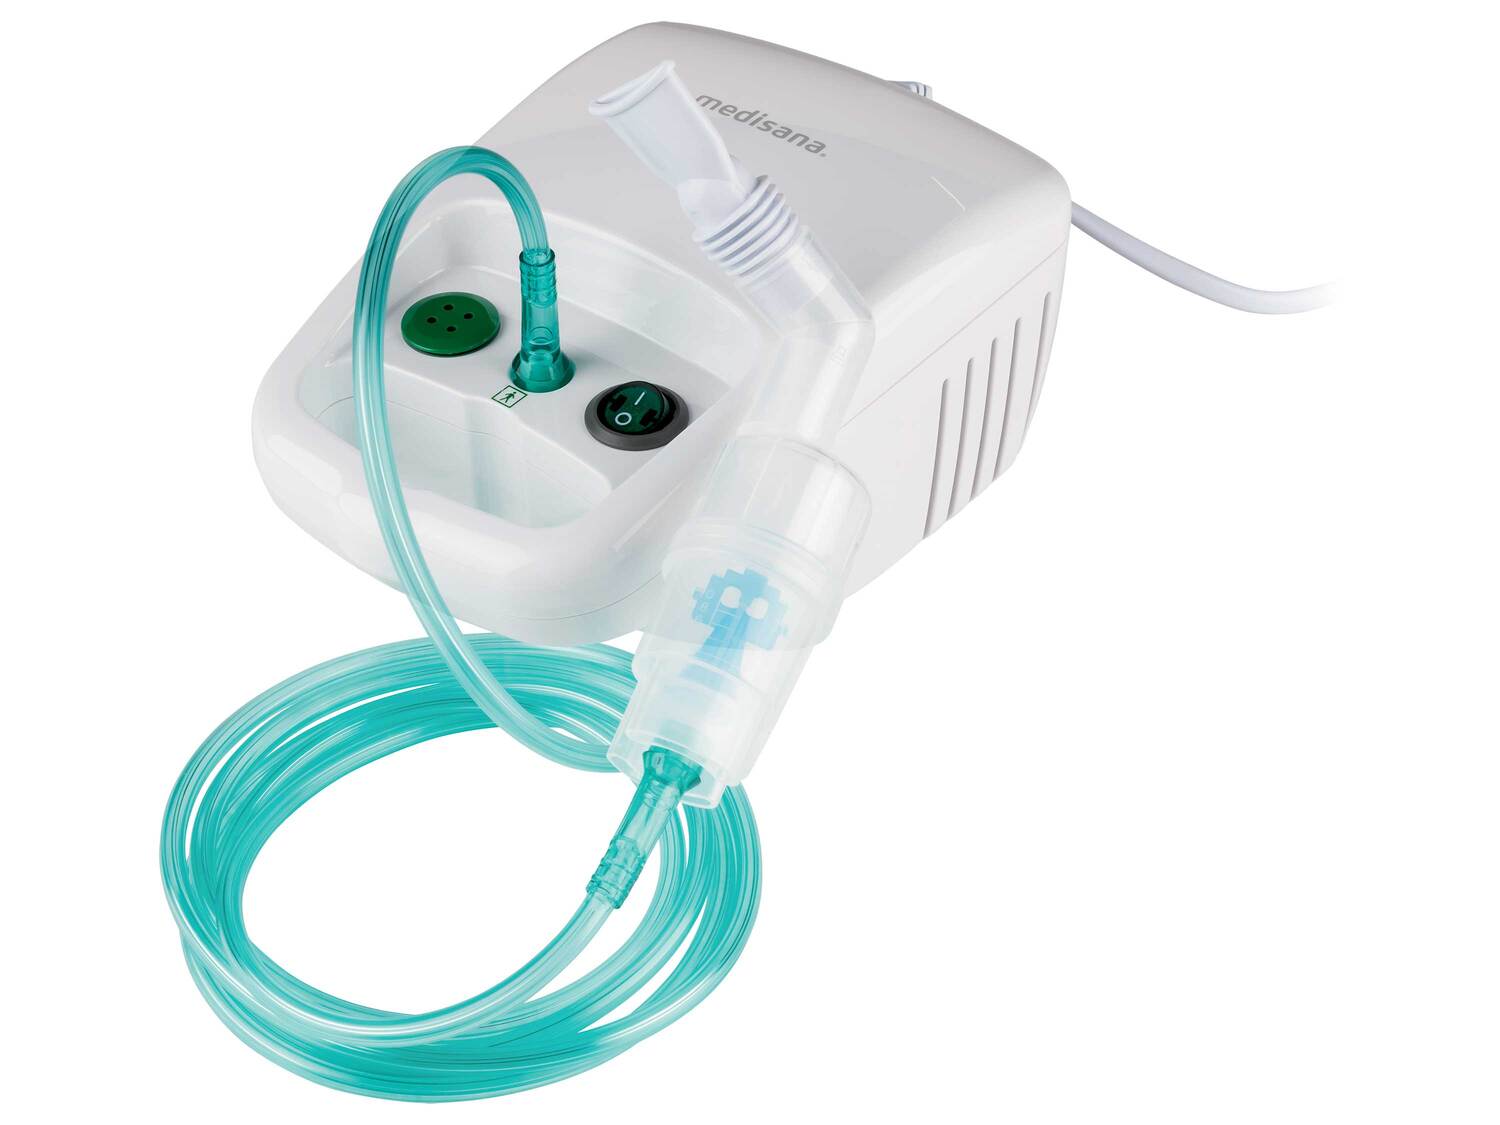 Inhalateur Medisana, le prix 26.99 € 
- Pression de travail : 0,6 - 1,8 bar
- ...